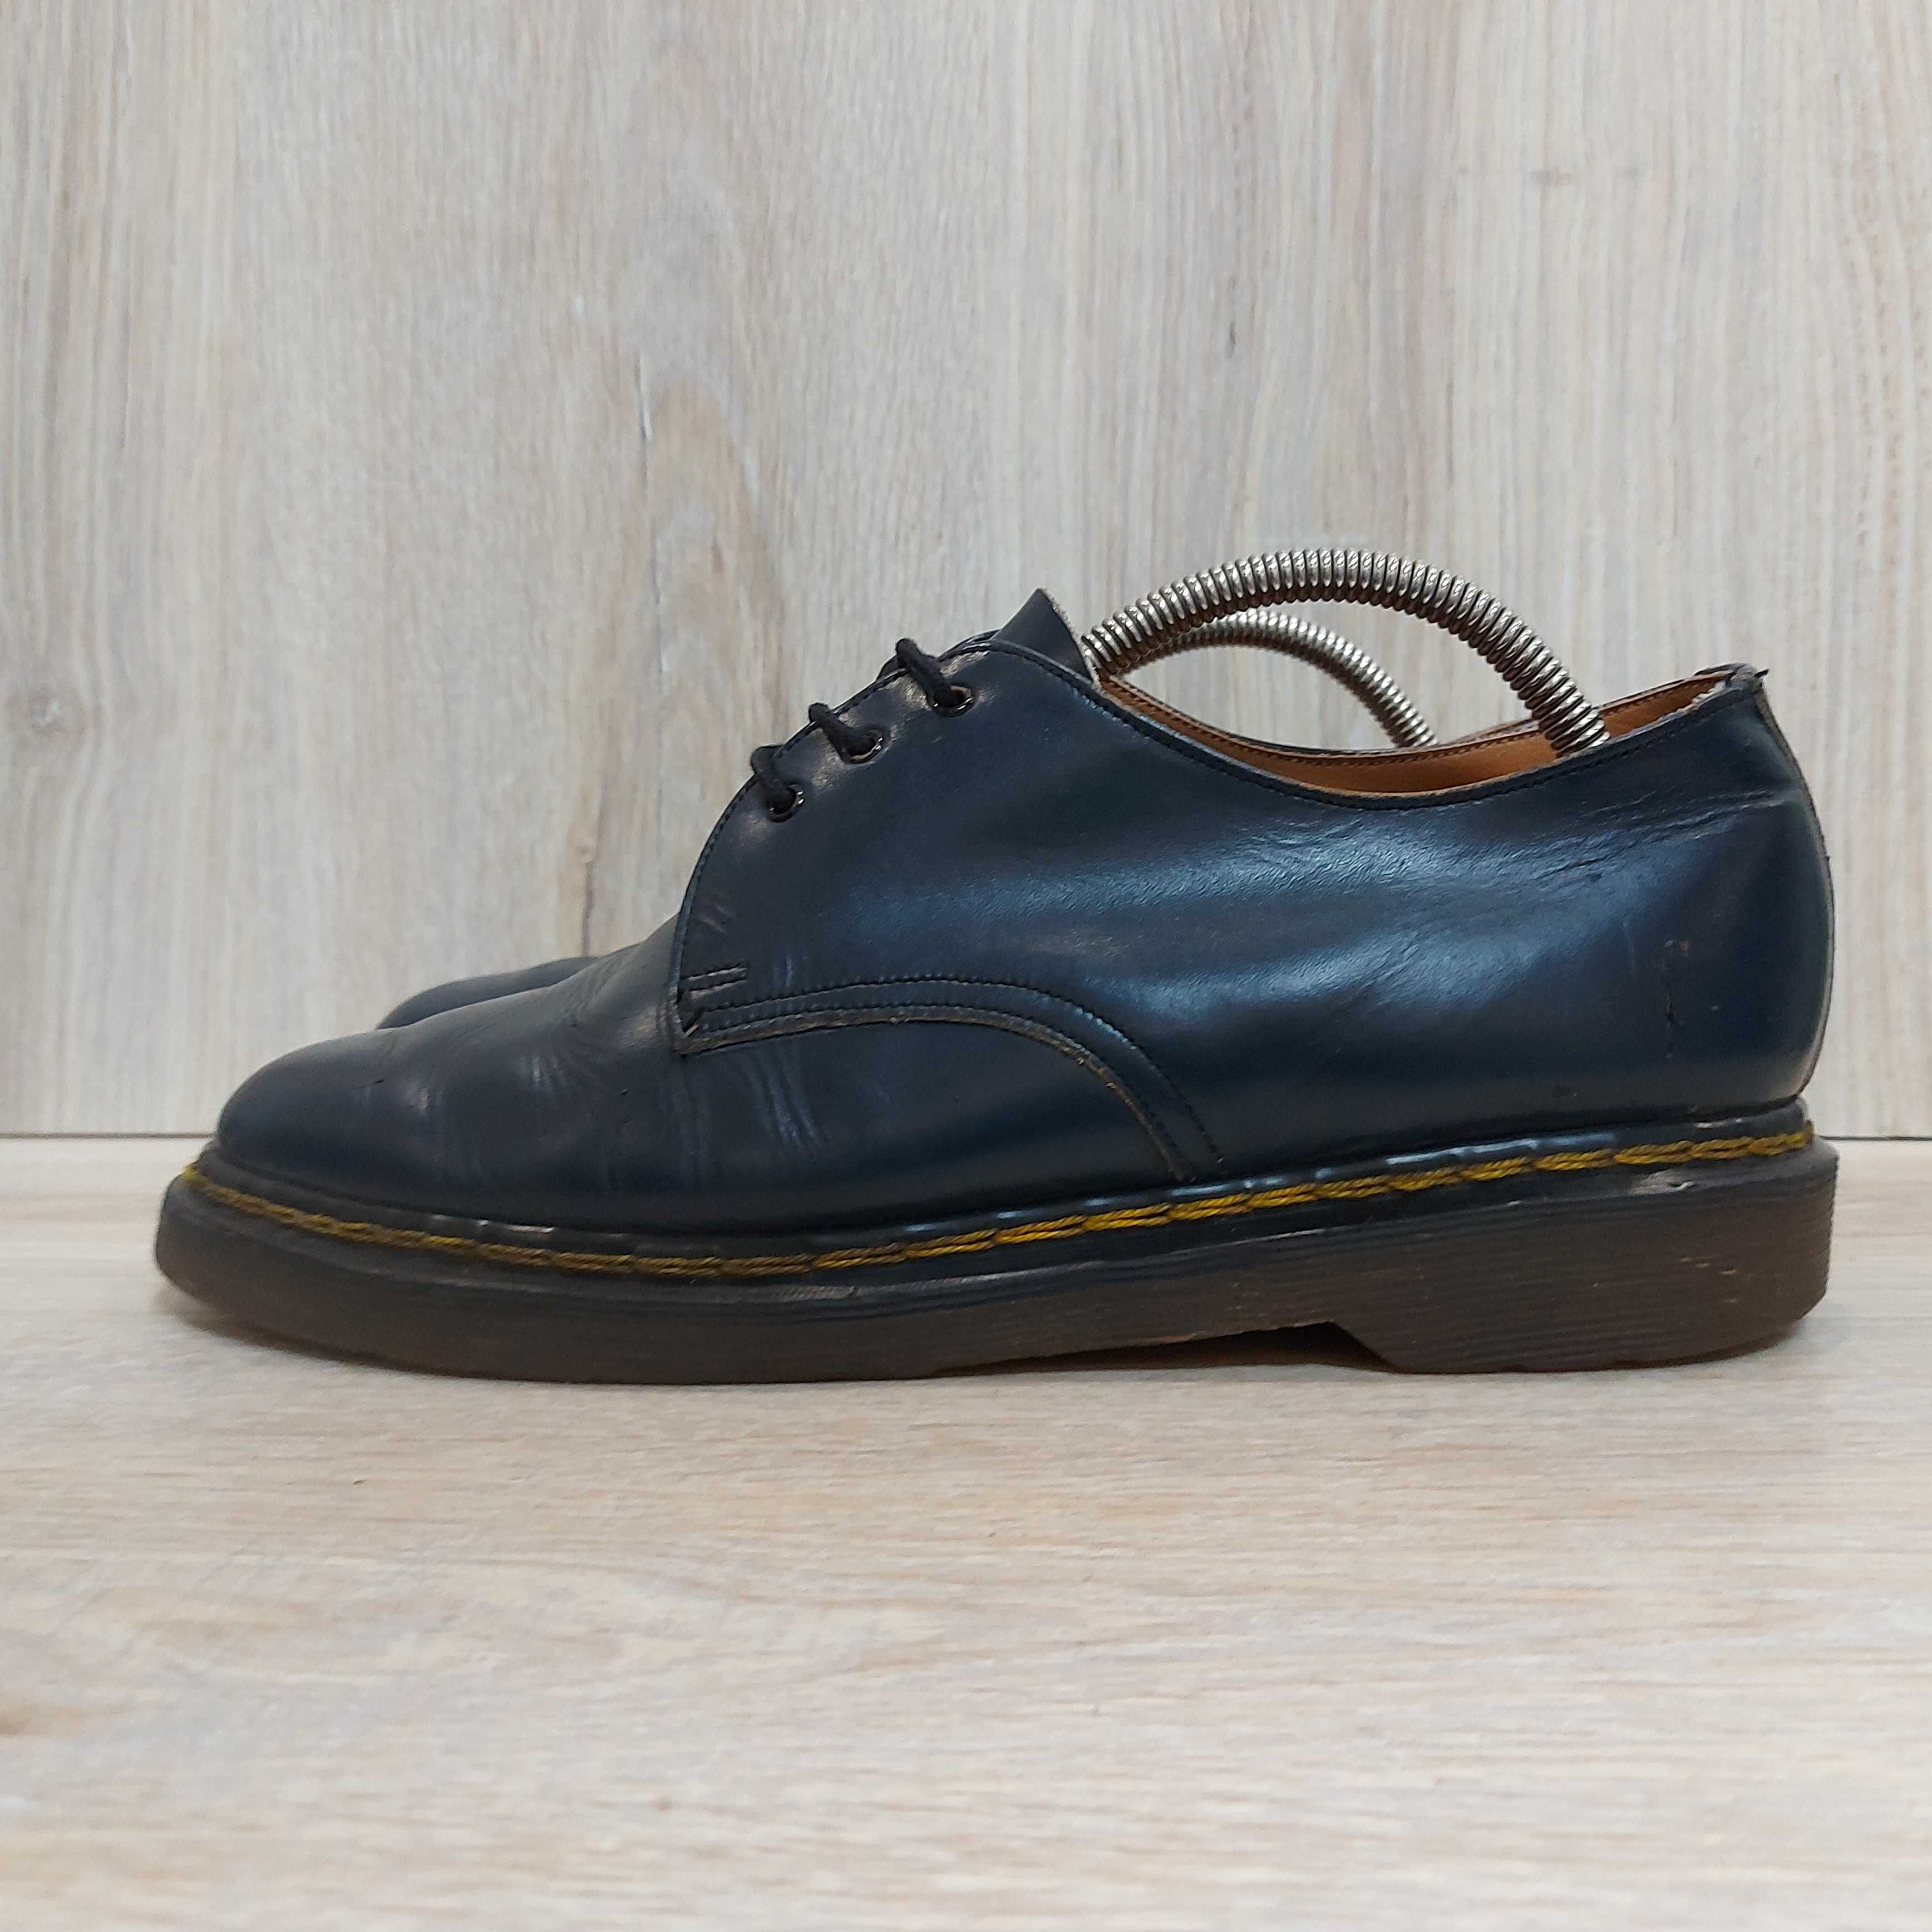 Кожаные туфли Dr. Martens Made in England оригинал